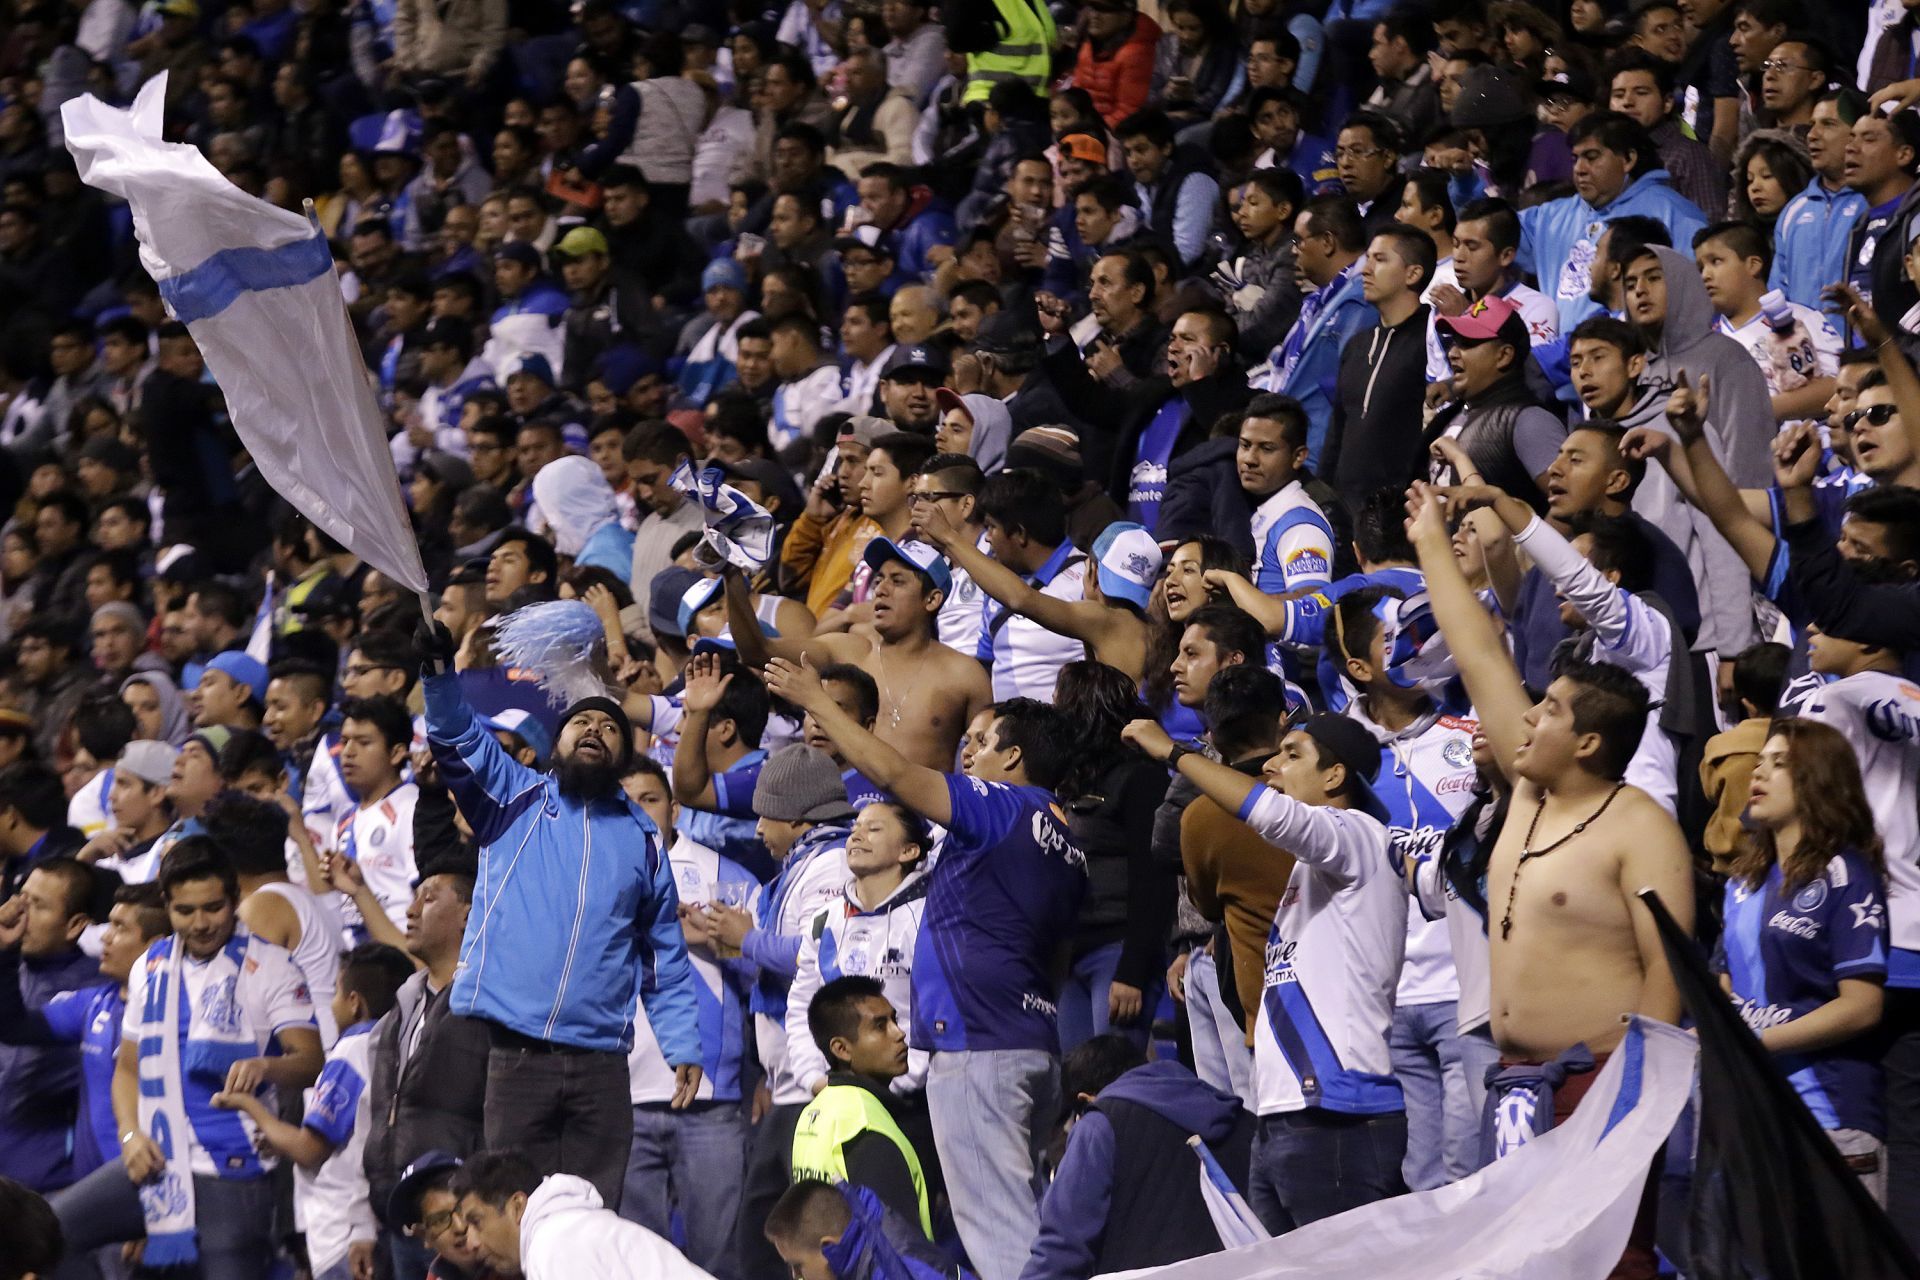 La afición del Puebla festeja en su estadio, antes del inicio de la pandemia de COVID-19 (Foto: Hilda Ríos/ Cuartoscuro)